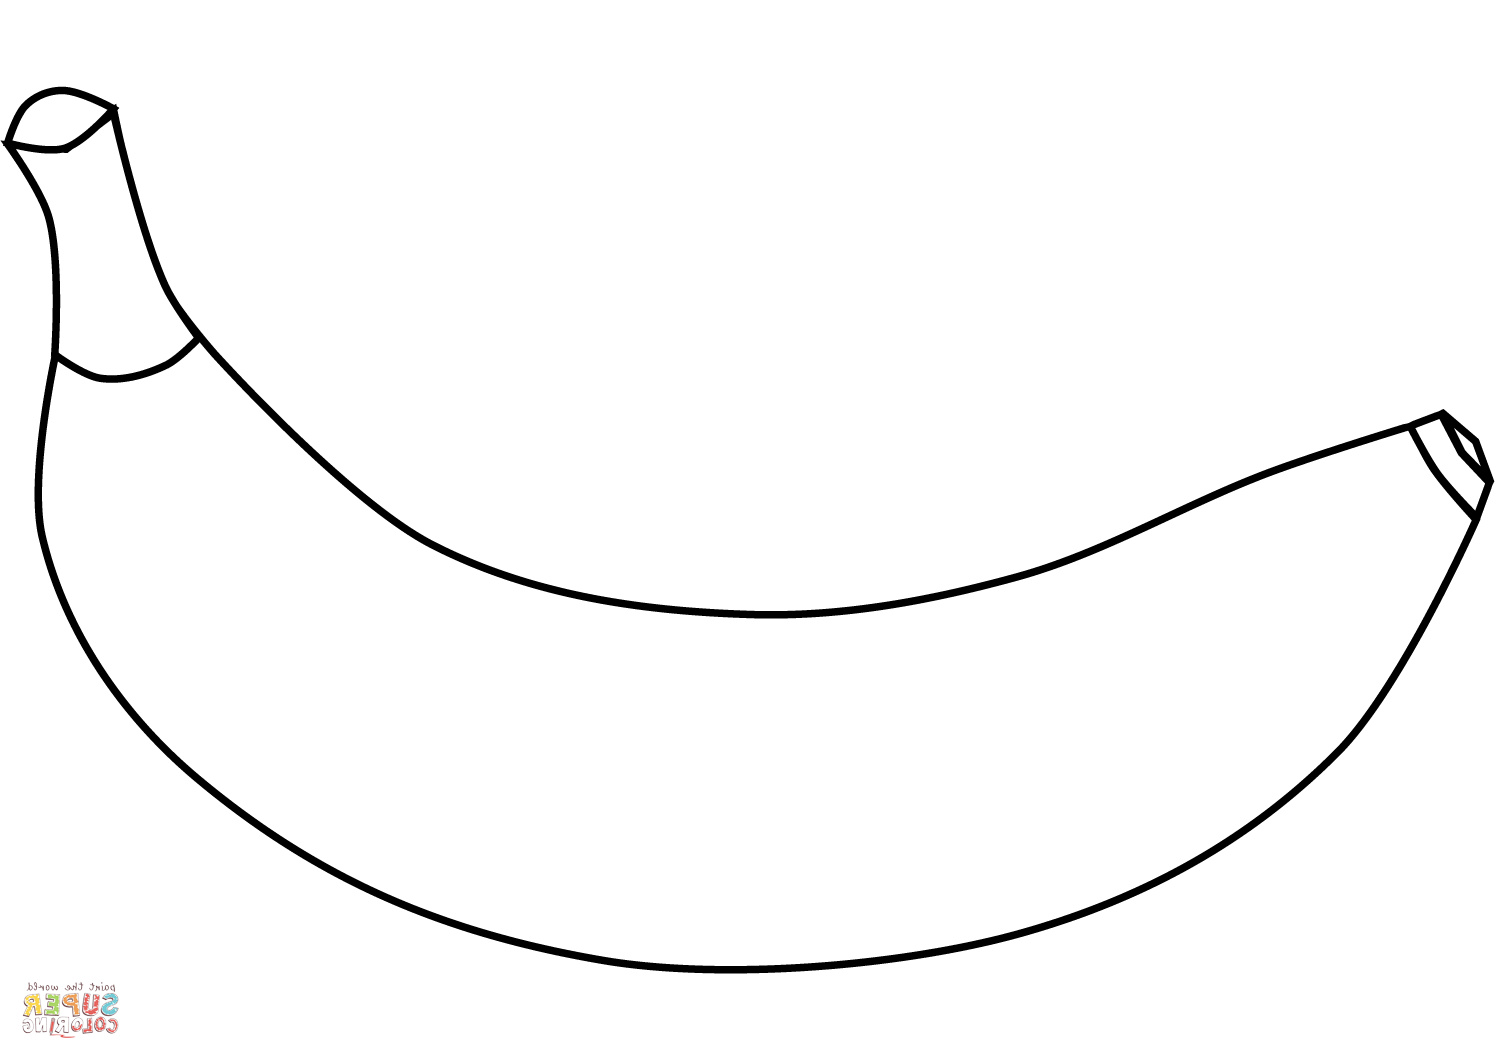 dibujo de una banana